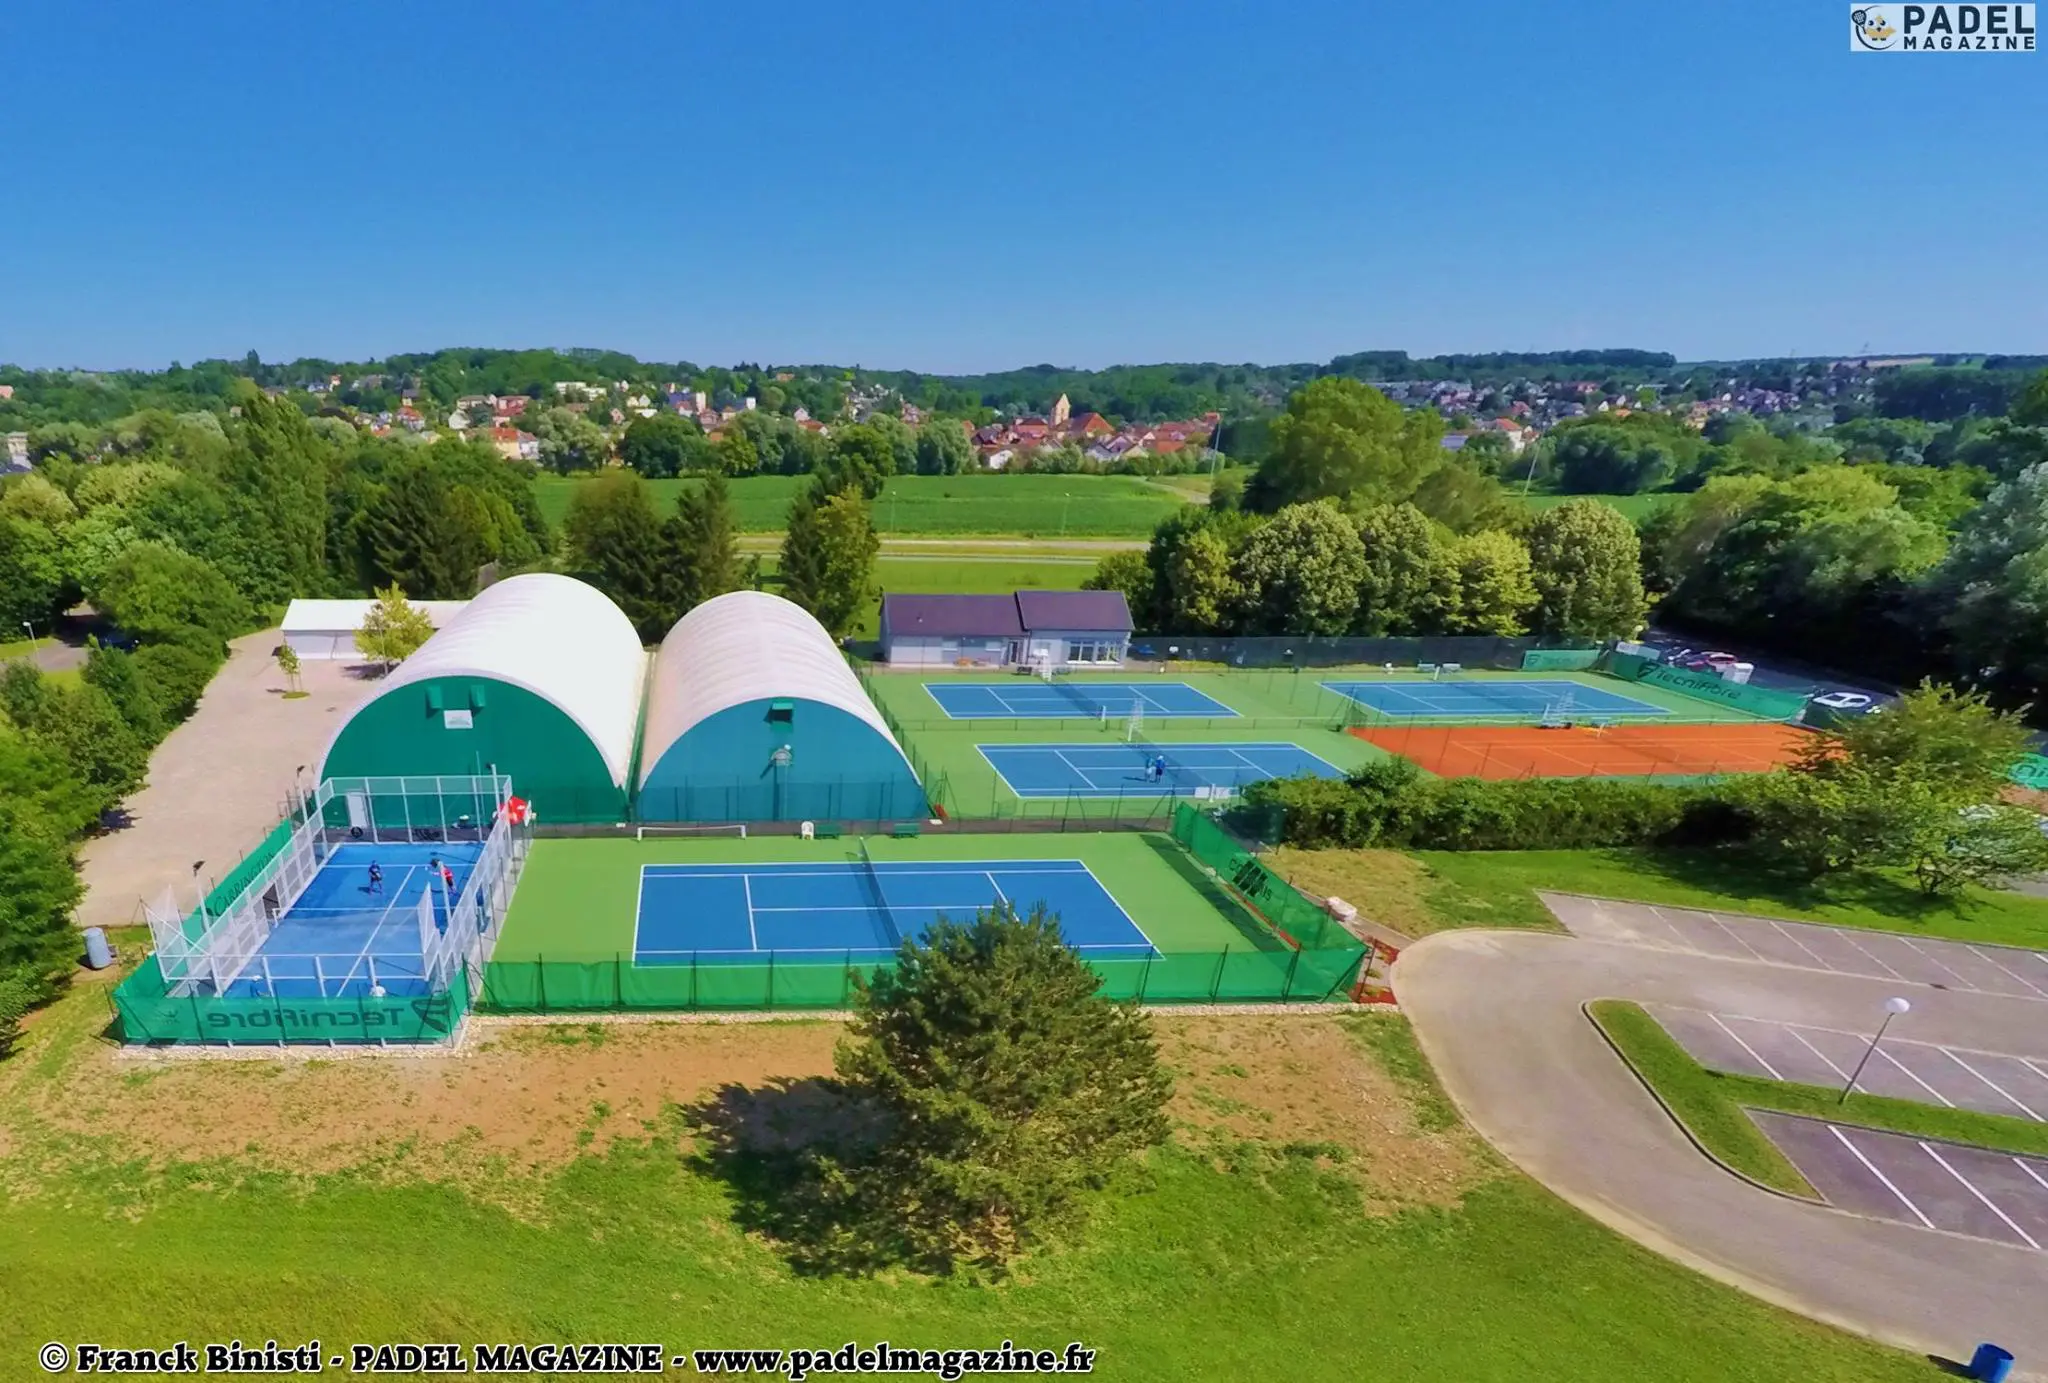 Brunstatt Tennis Club